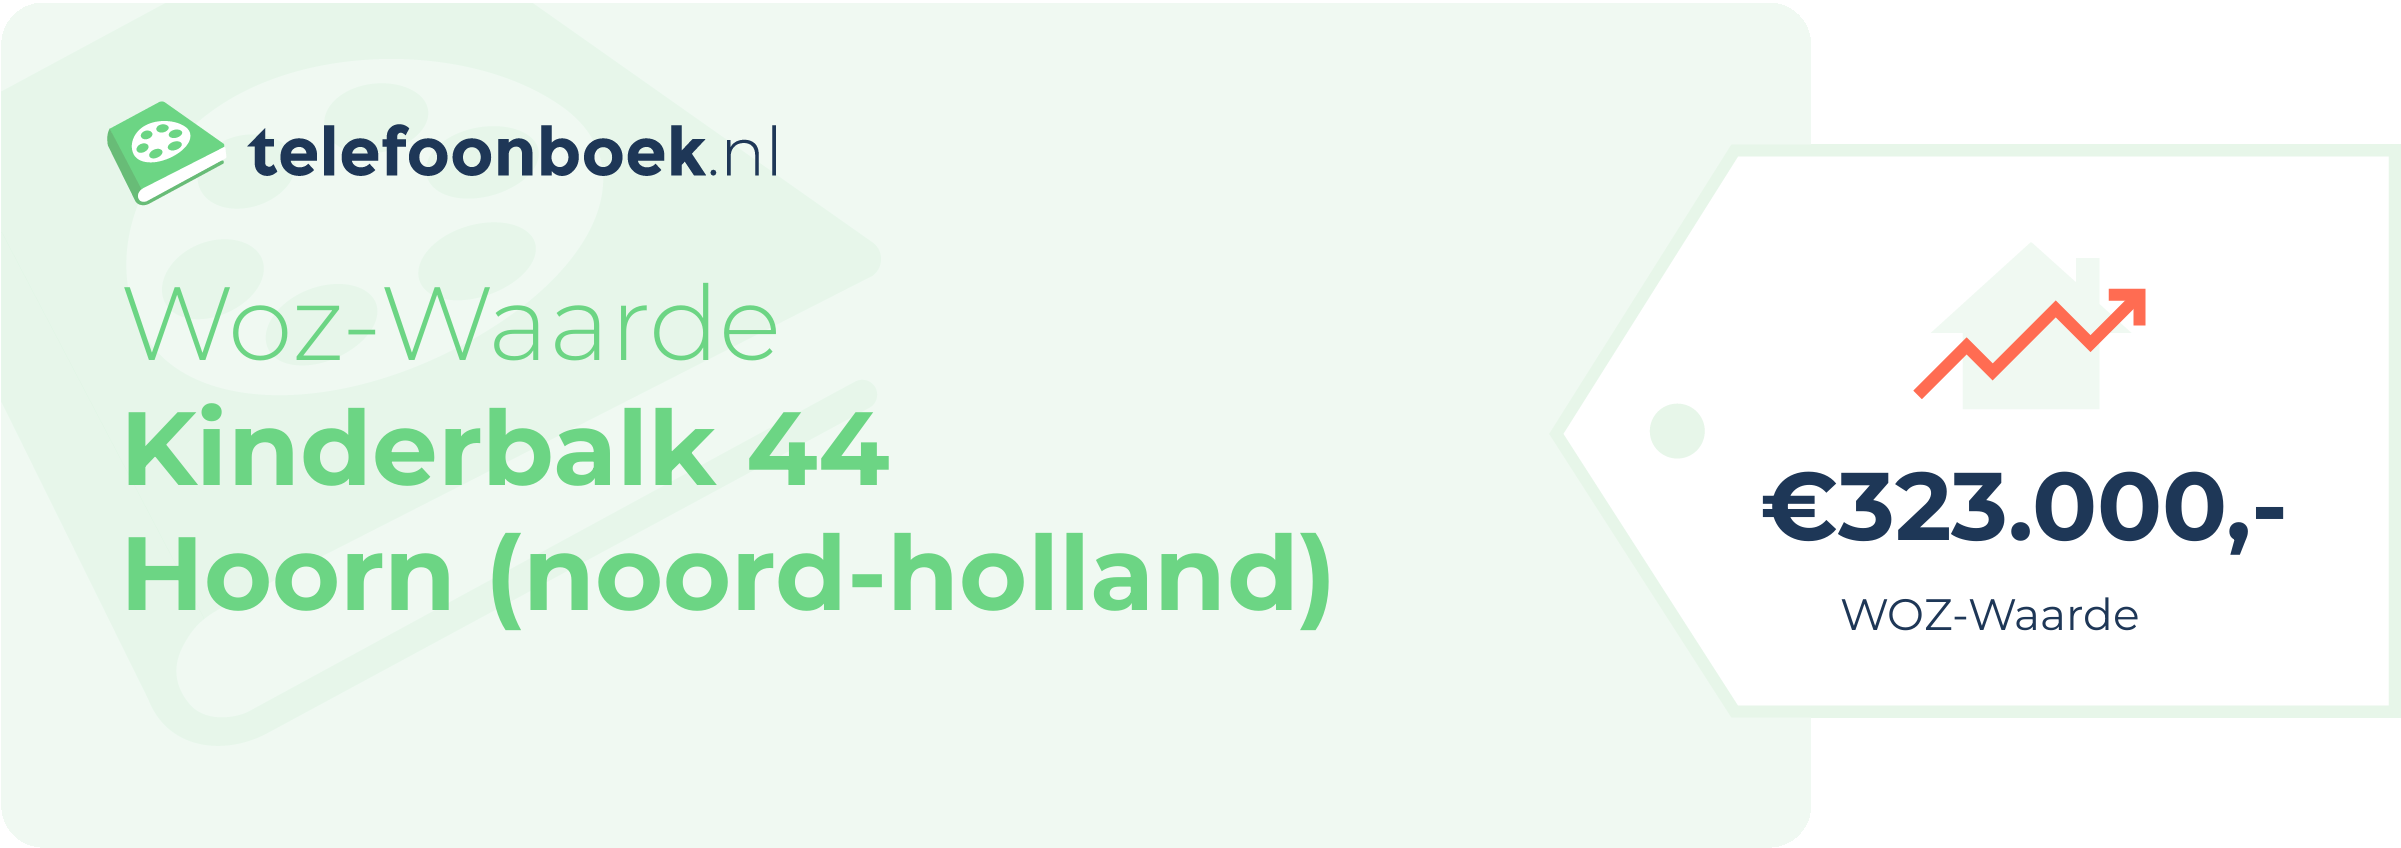 WOZ-waarde Kinderbalk 44 Hoorn (Noord-Holland)